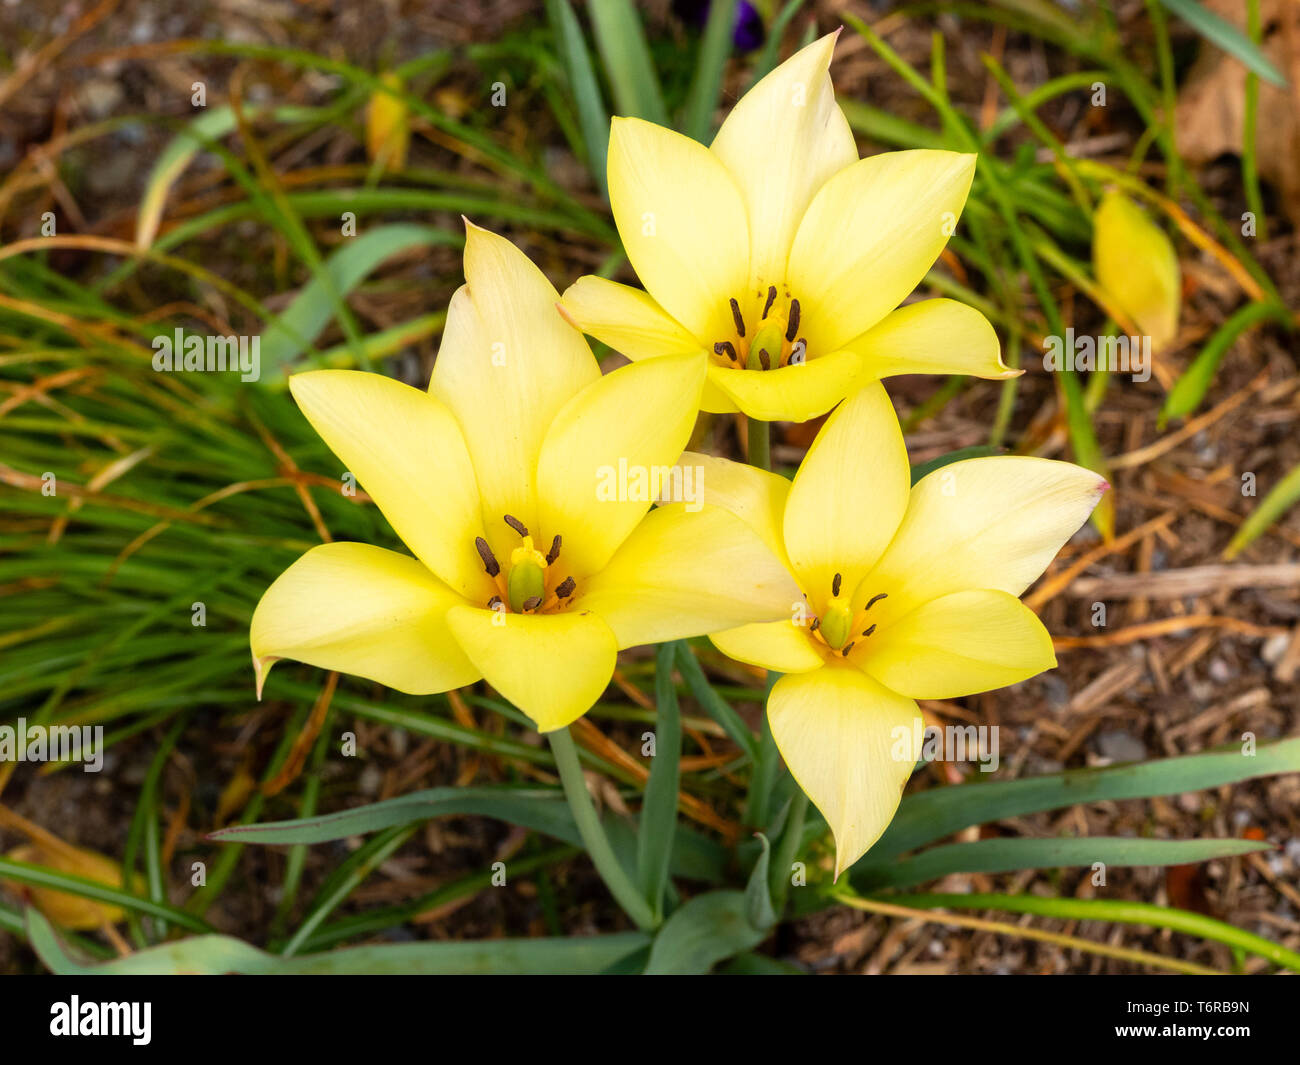 Fleurs de Printemps jaune de la tulipe botanique hardy, Tulipa linifolia Batalinii (groupe) Banque D'Images